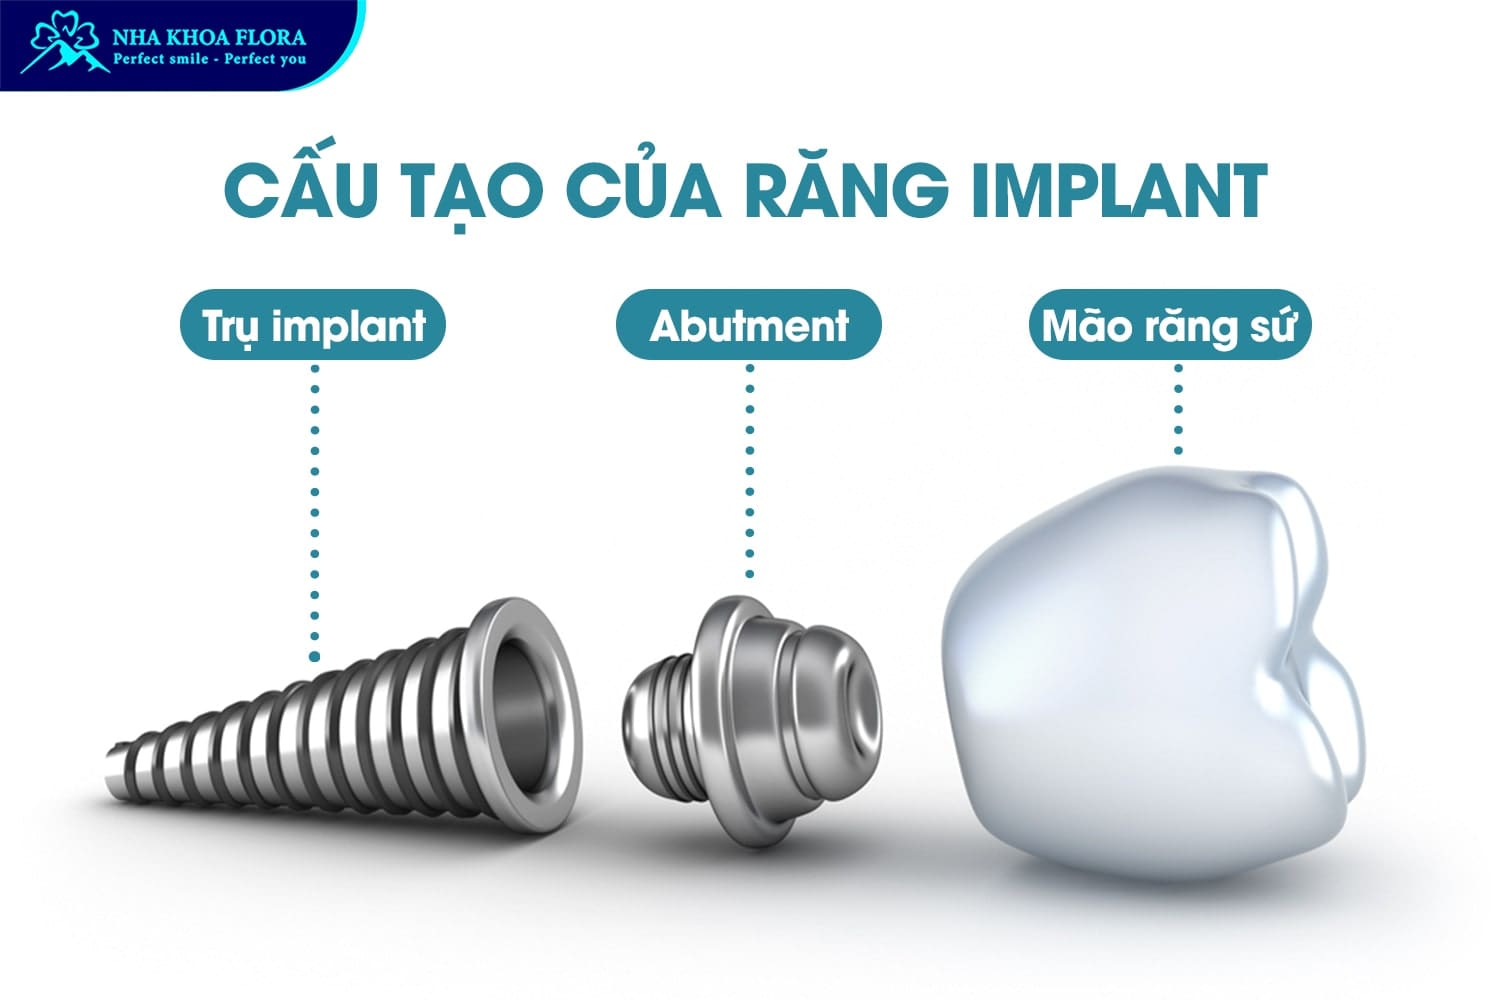 Trồng Răng Implant Là Gì? 10 Điều Cần Biết Trước Khi Thực Hiện - ảnh 2